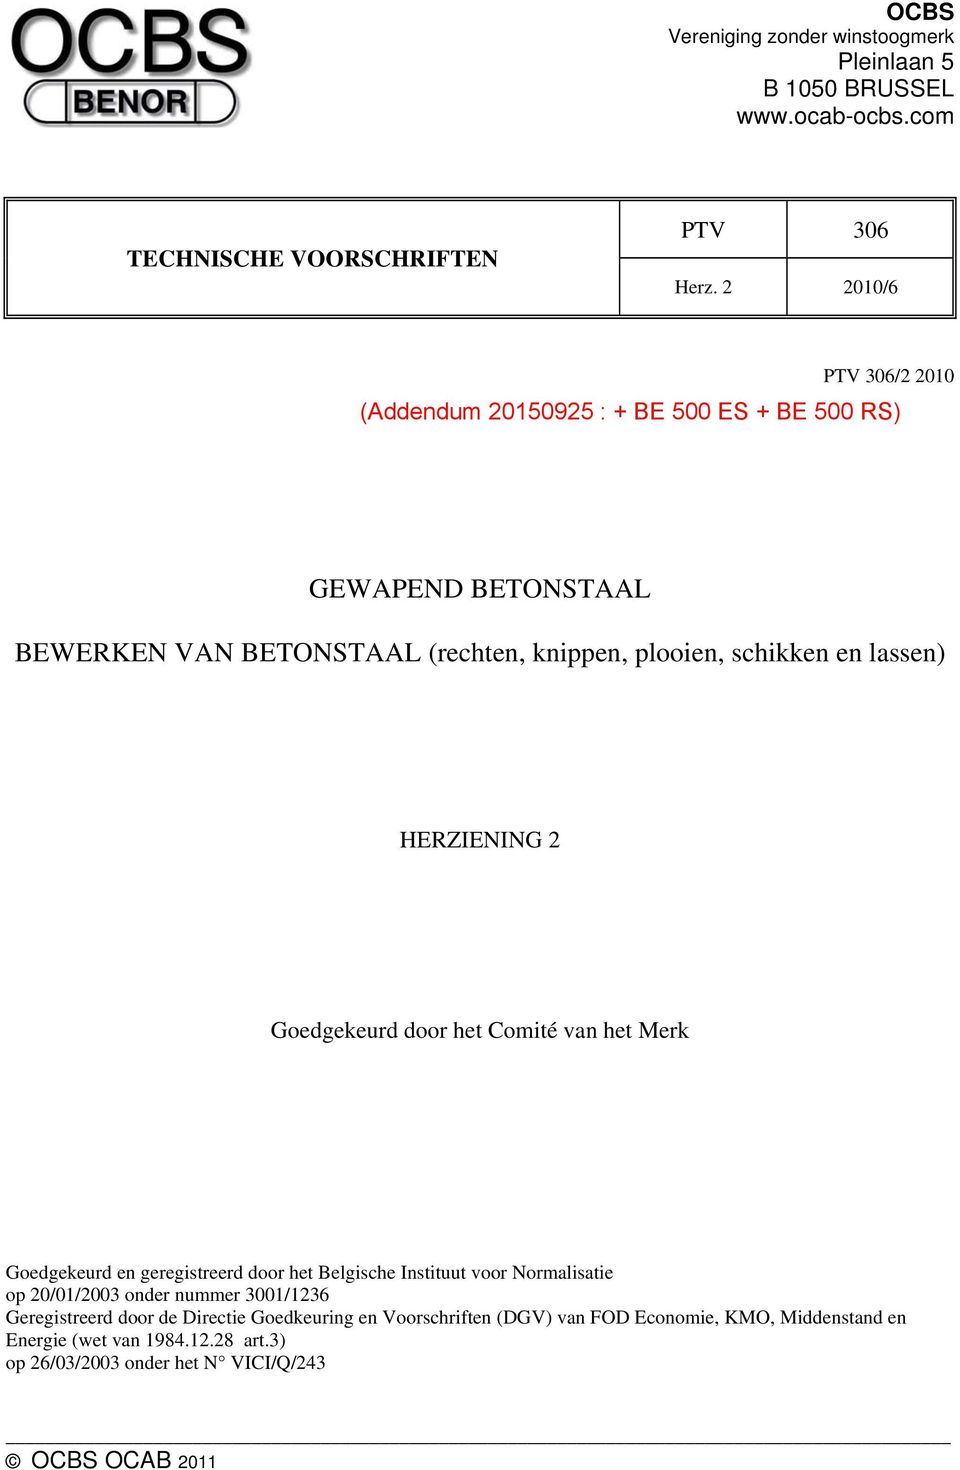 Goedgekeurd en geregistreerd door het Belgische Instituut voor Normalisatie op 20/01/2003 onder nummer 3001/1236 Geregistreerd door de